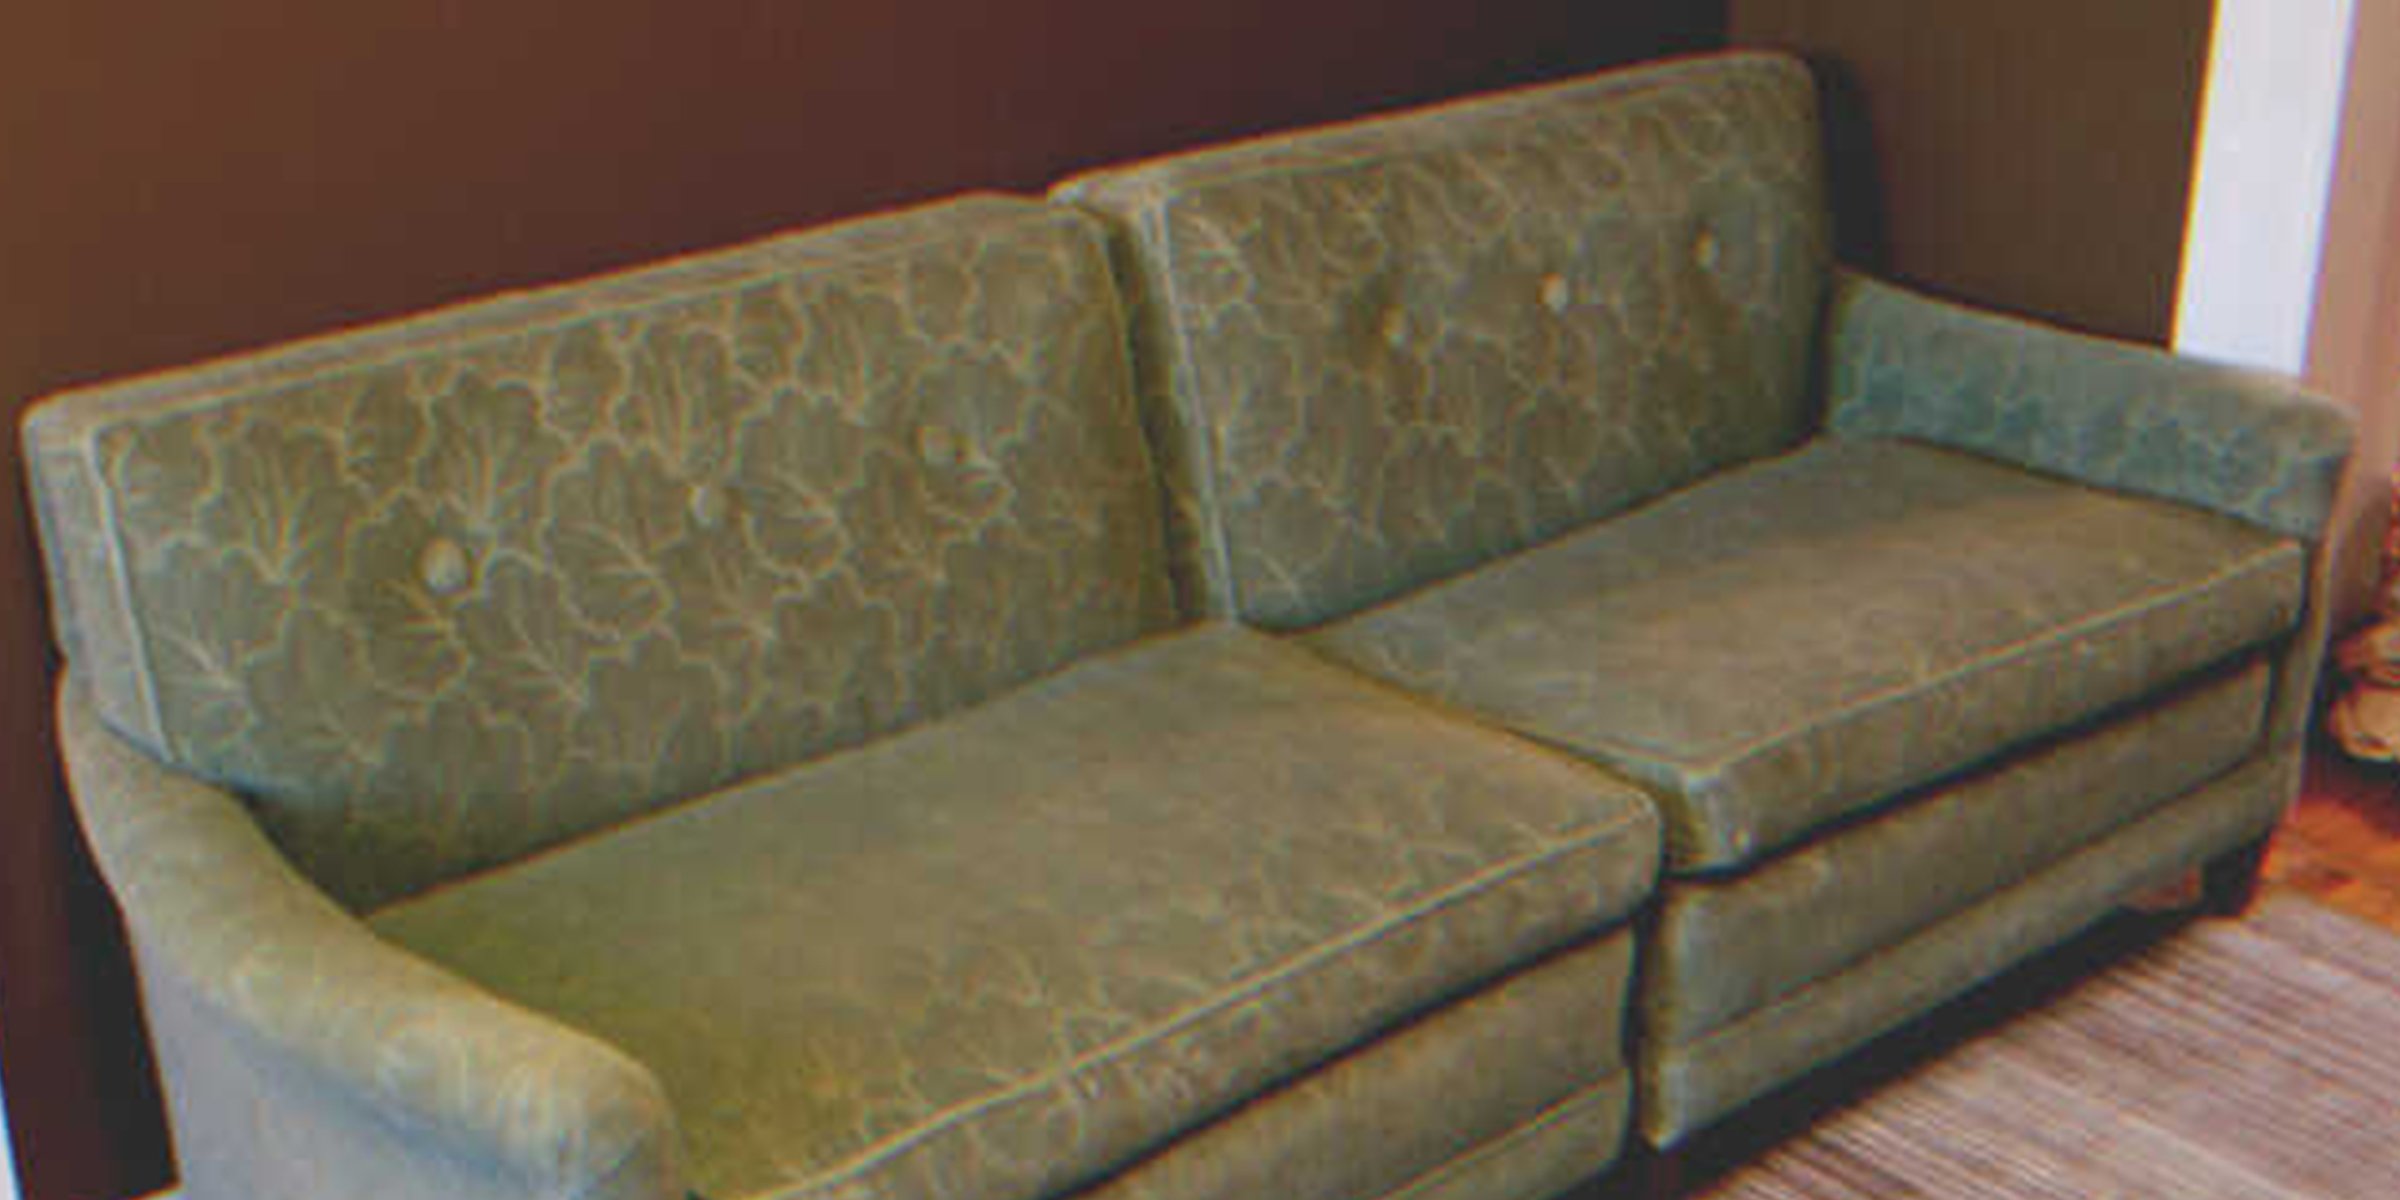 Un sofa verde | Foto: Flickr/BrianTeutsch (CC BY 2.0)